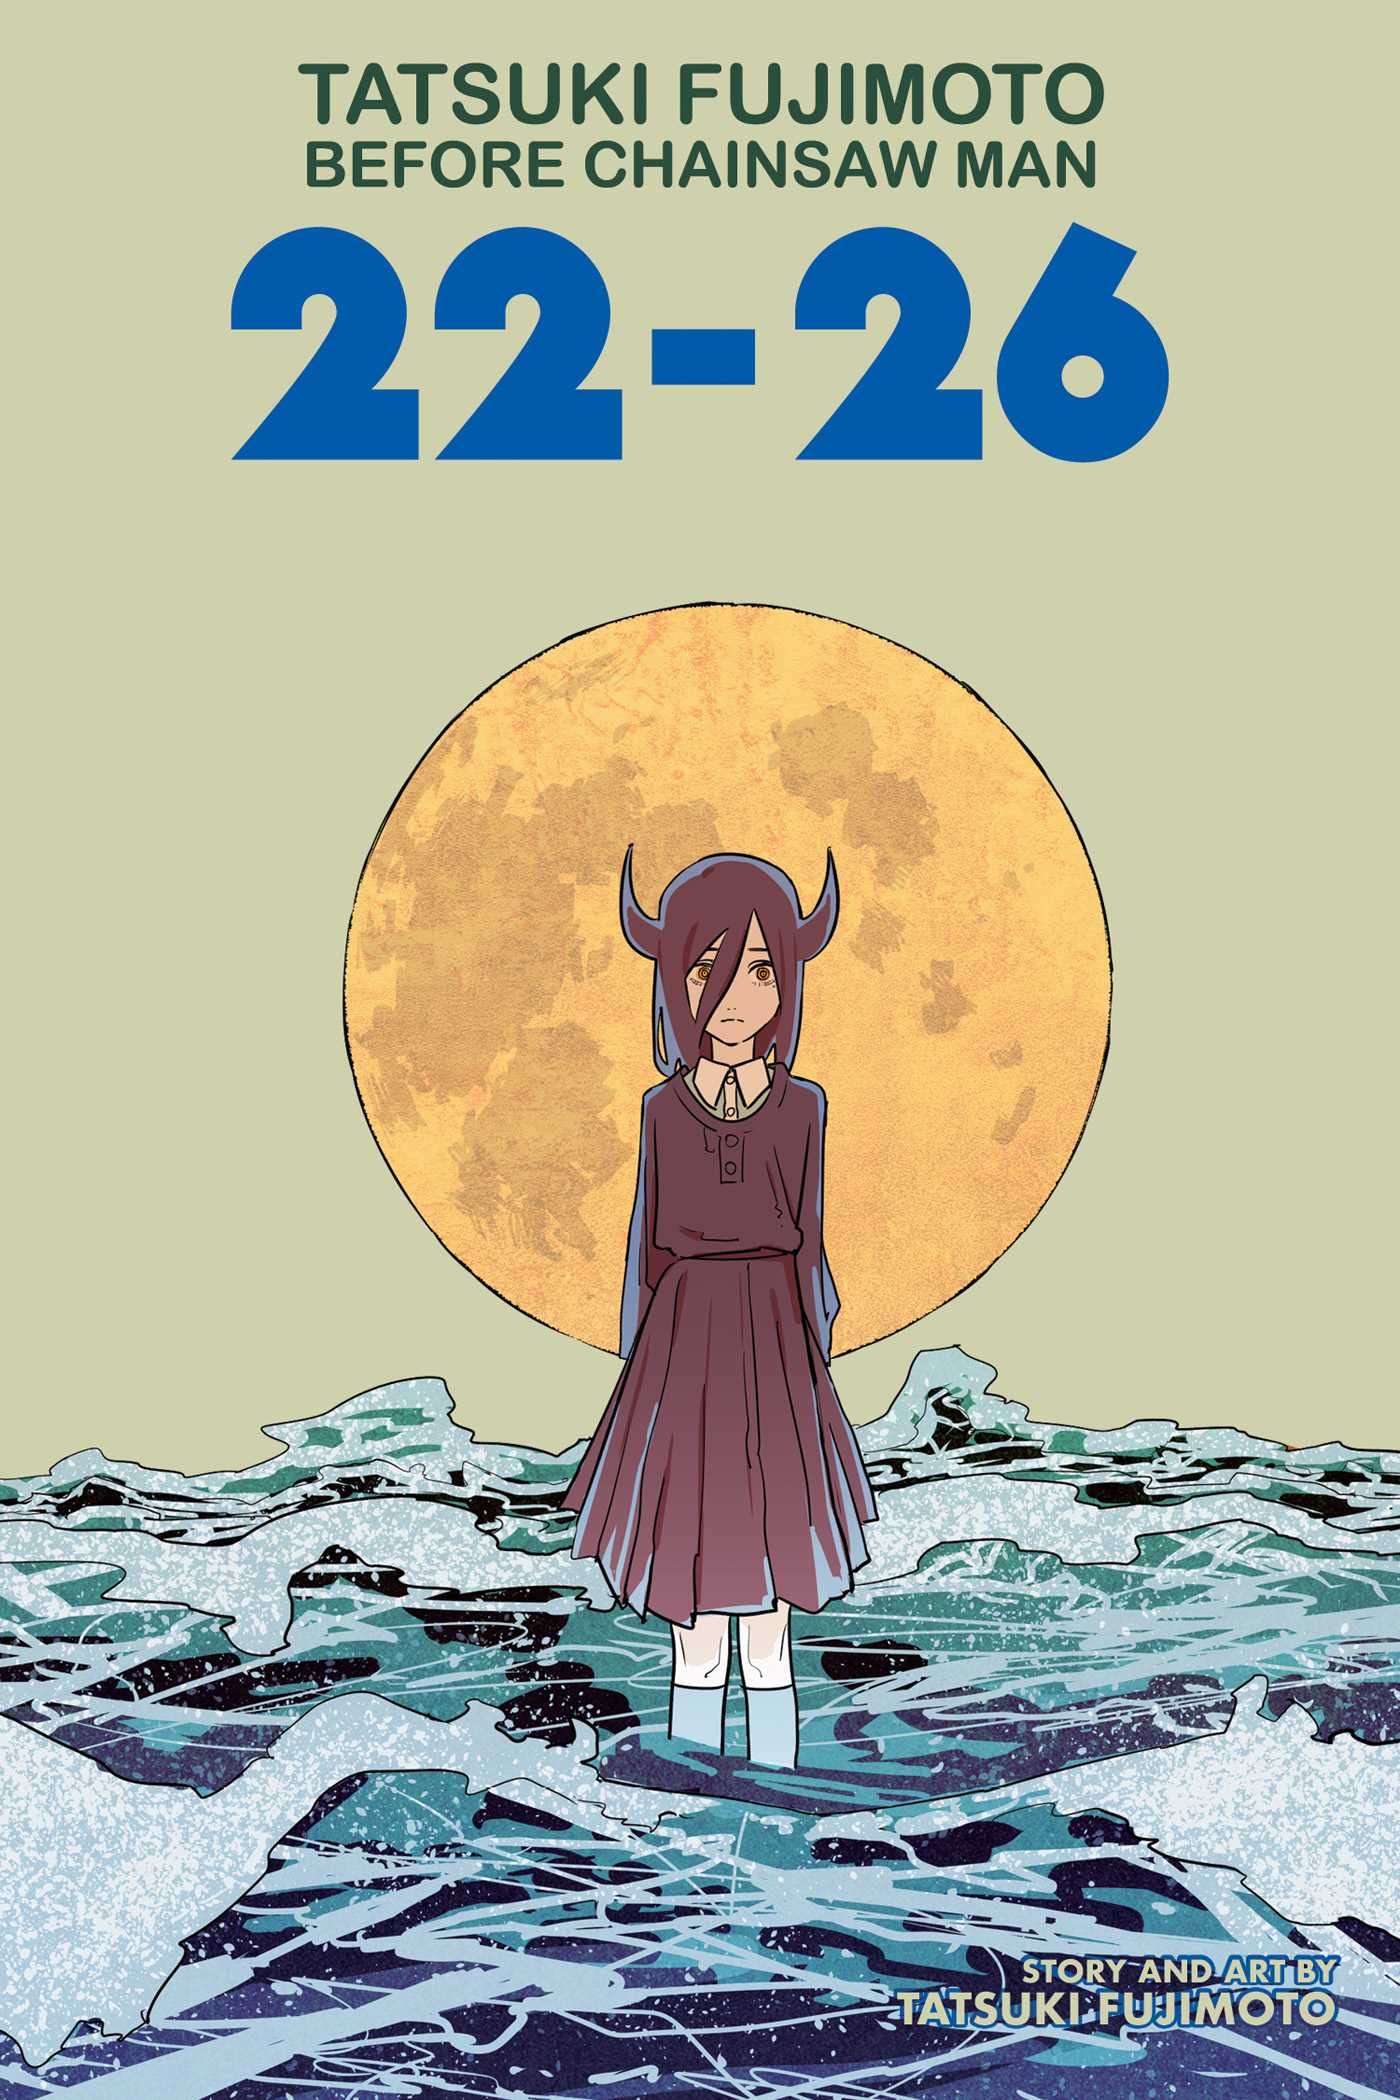 Tatsuki Fujimoto Before Chainsaw Man: 22–26 Manga Anthology. $7.49